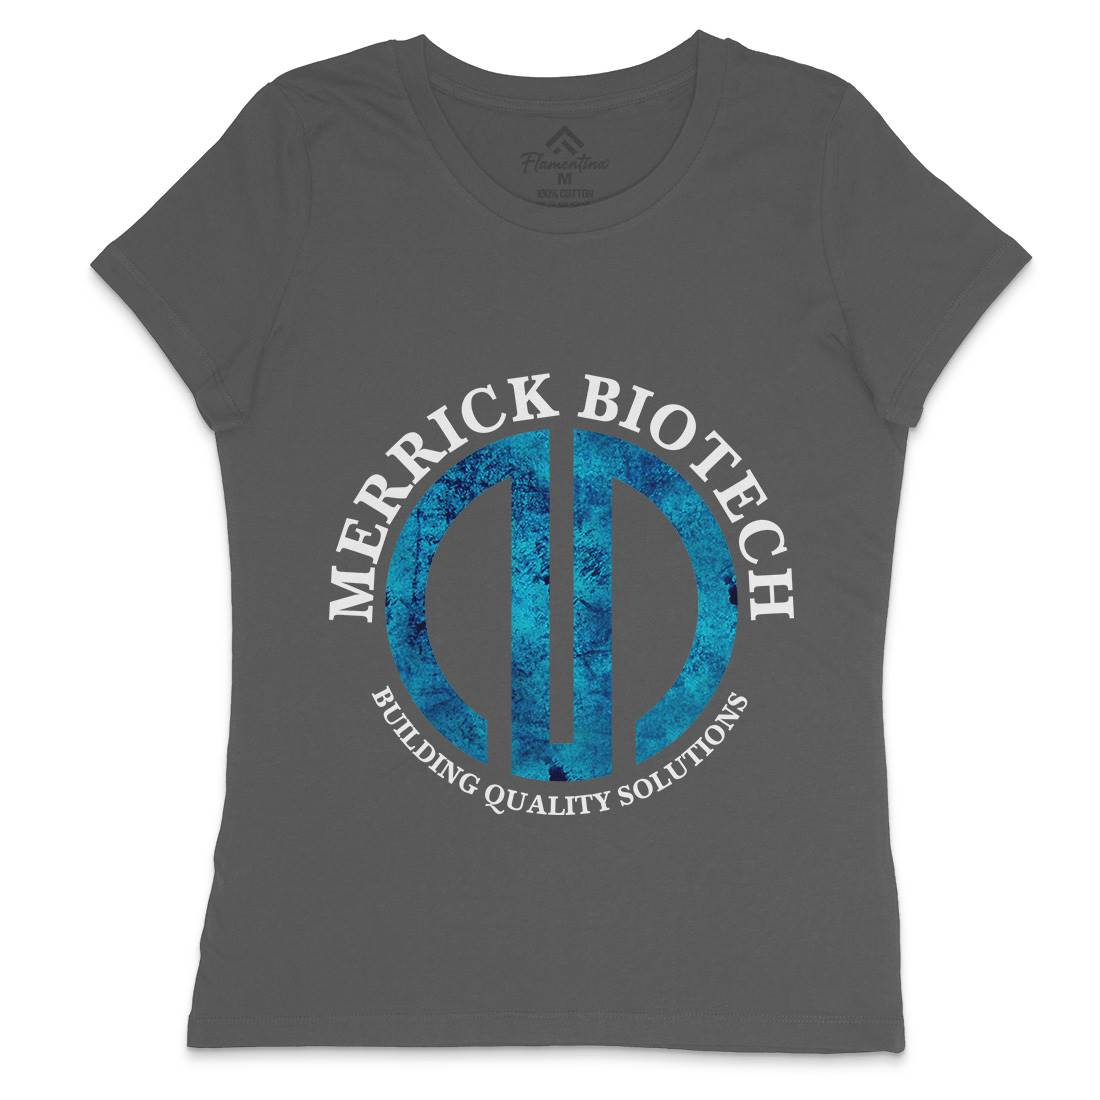 Merrick Biotech Womens Crew Neck T-Shirt Space D393